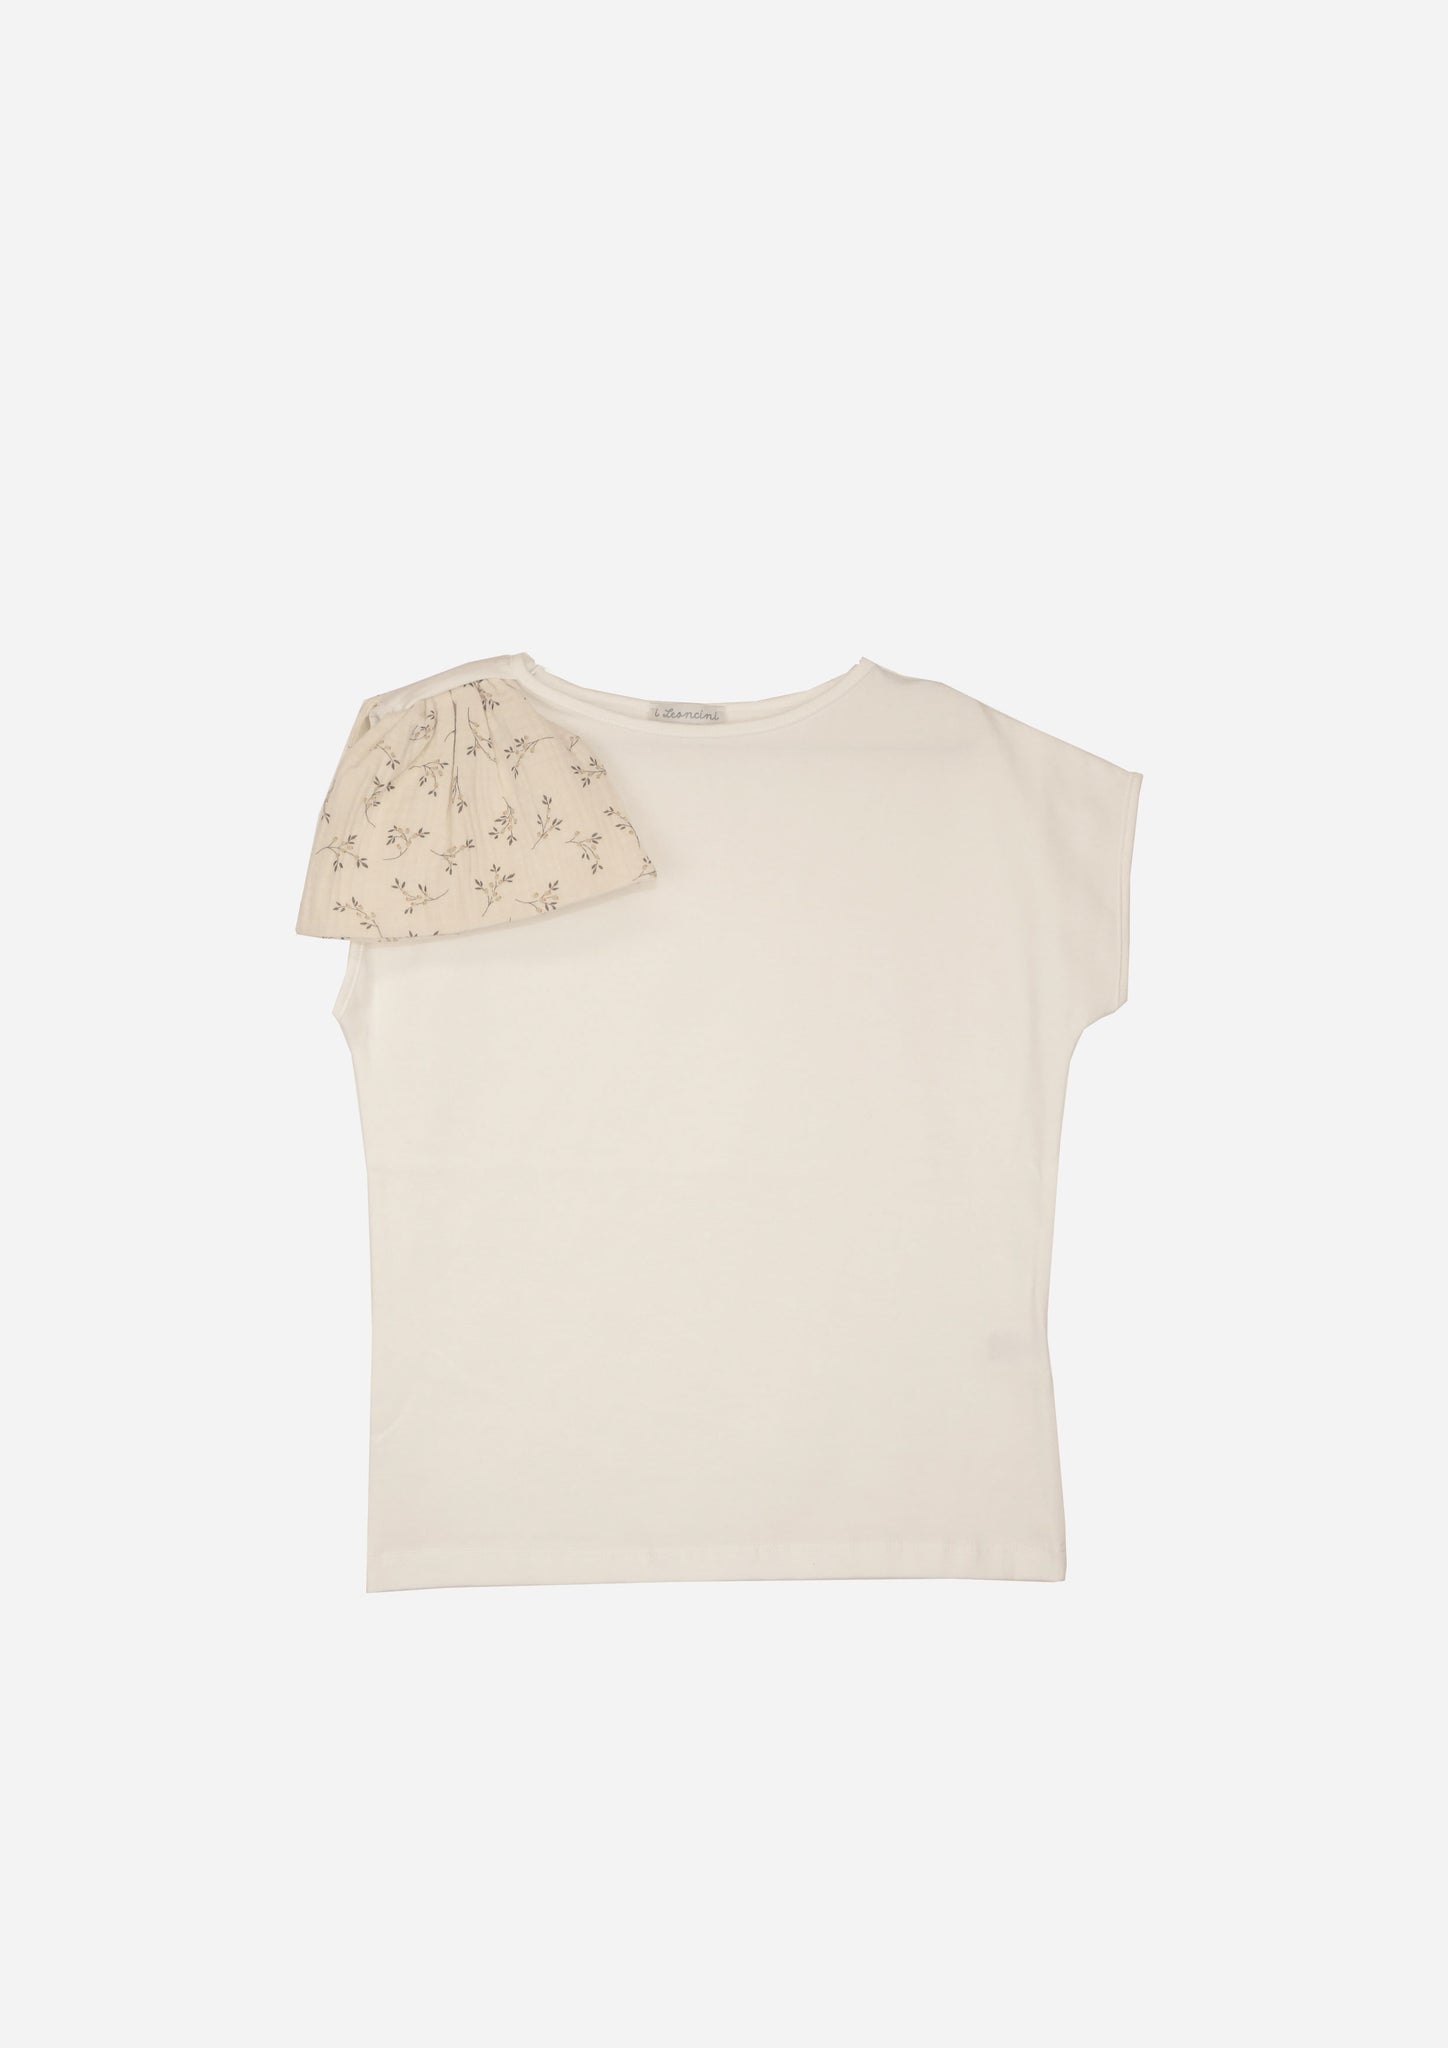 T-shirt SOLE Panna, fiocco floreale-OUTLET T-shirt, Camicie, Top e Canotte-I Leoncini Shop